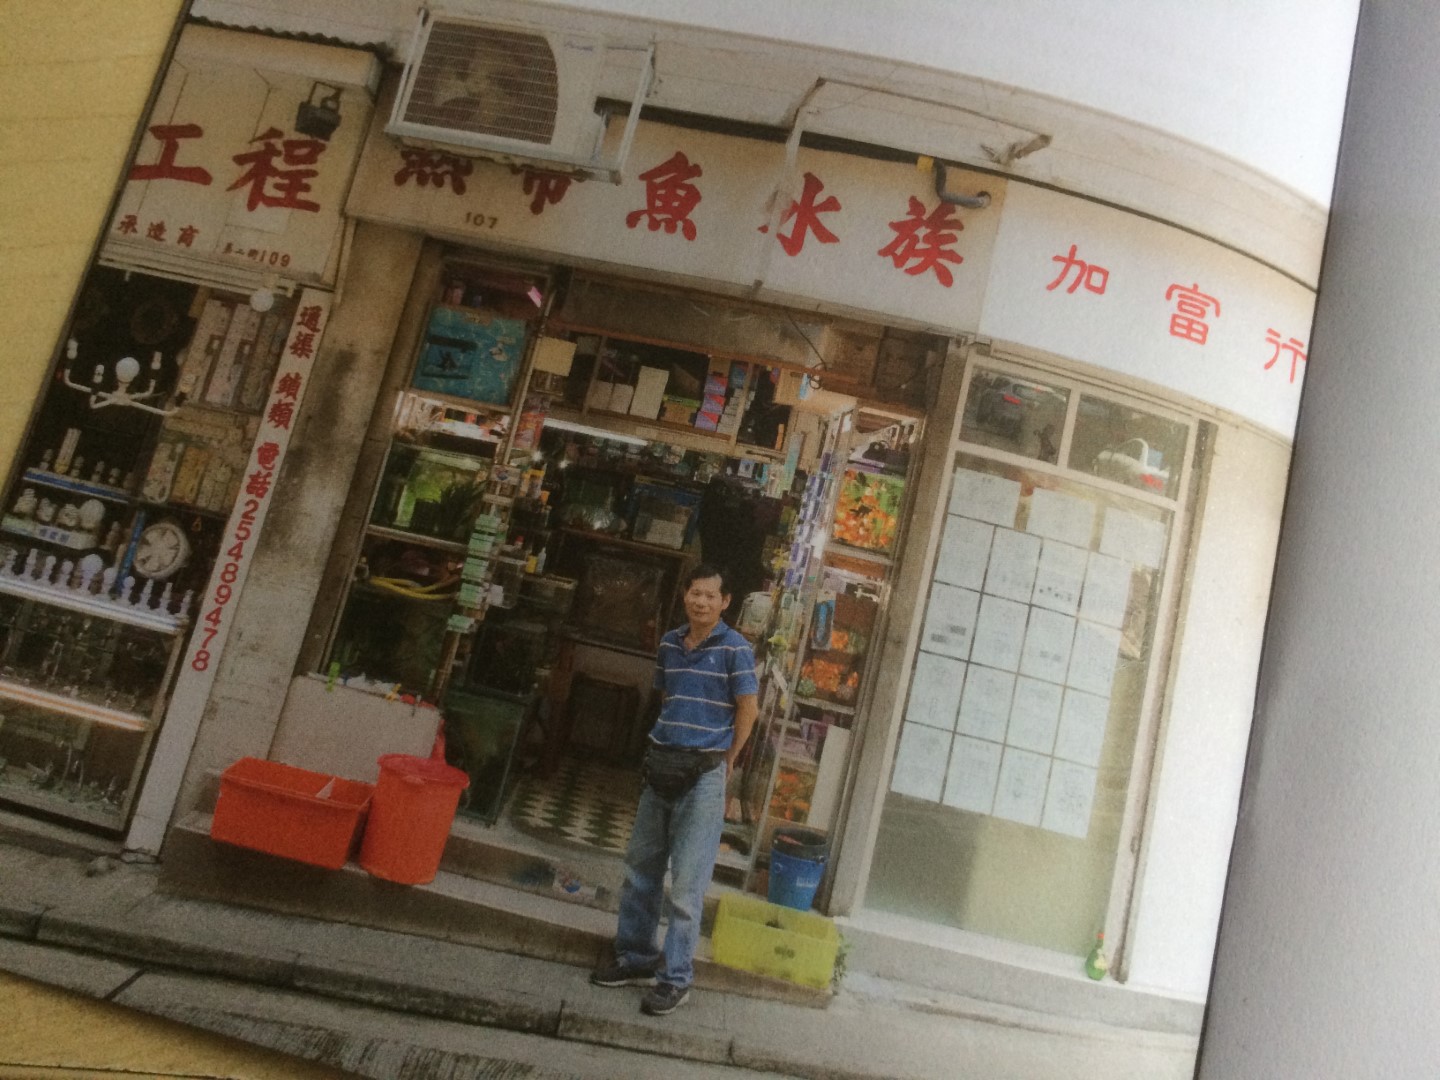 位於第二街的熱帶魚水族館，老闆陳良，見於長春社文化古蹟中心所印發的小冊子。